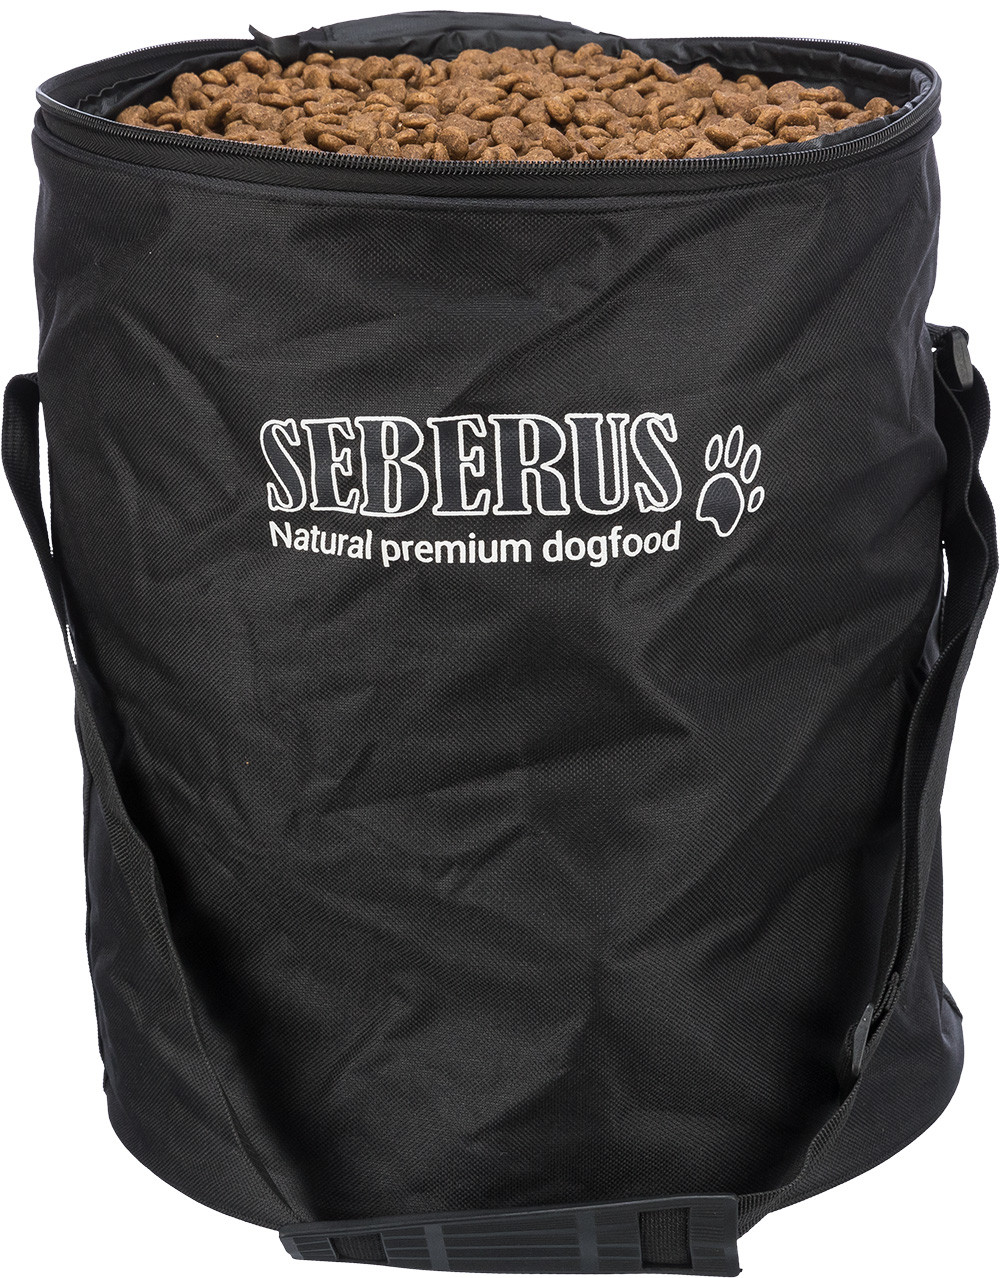 Contenitore per cibo pieghevole Seberus (12 kg), Pratico